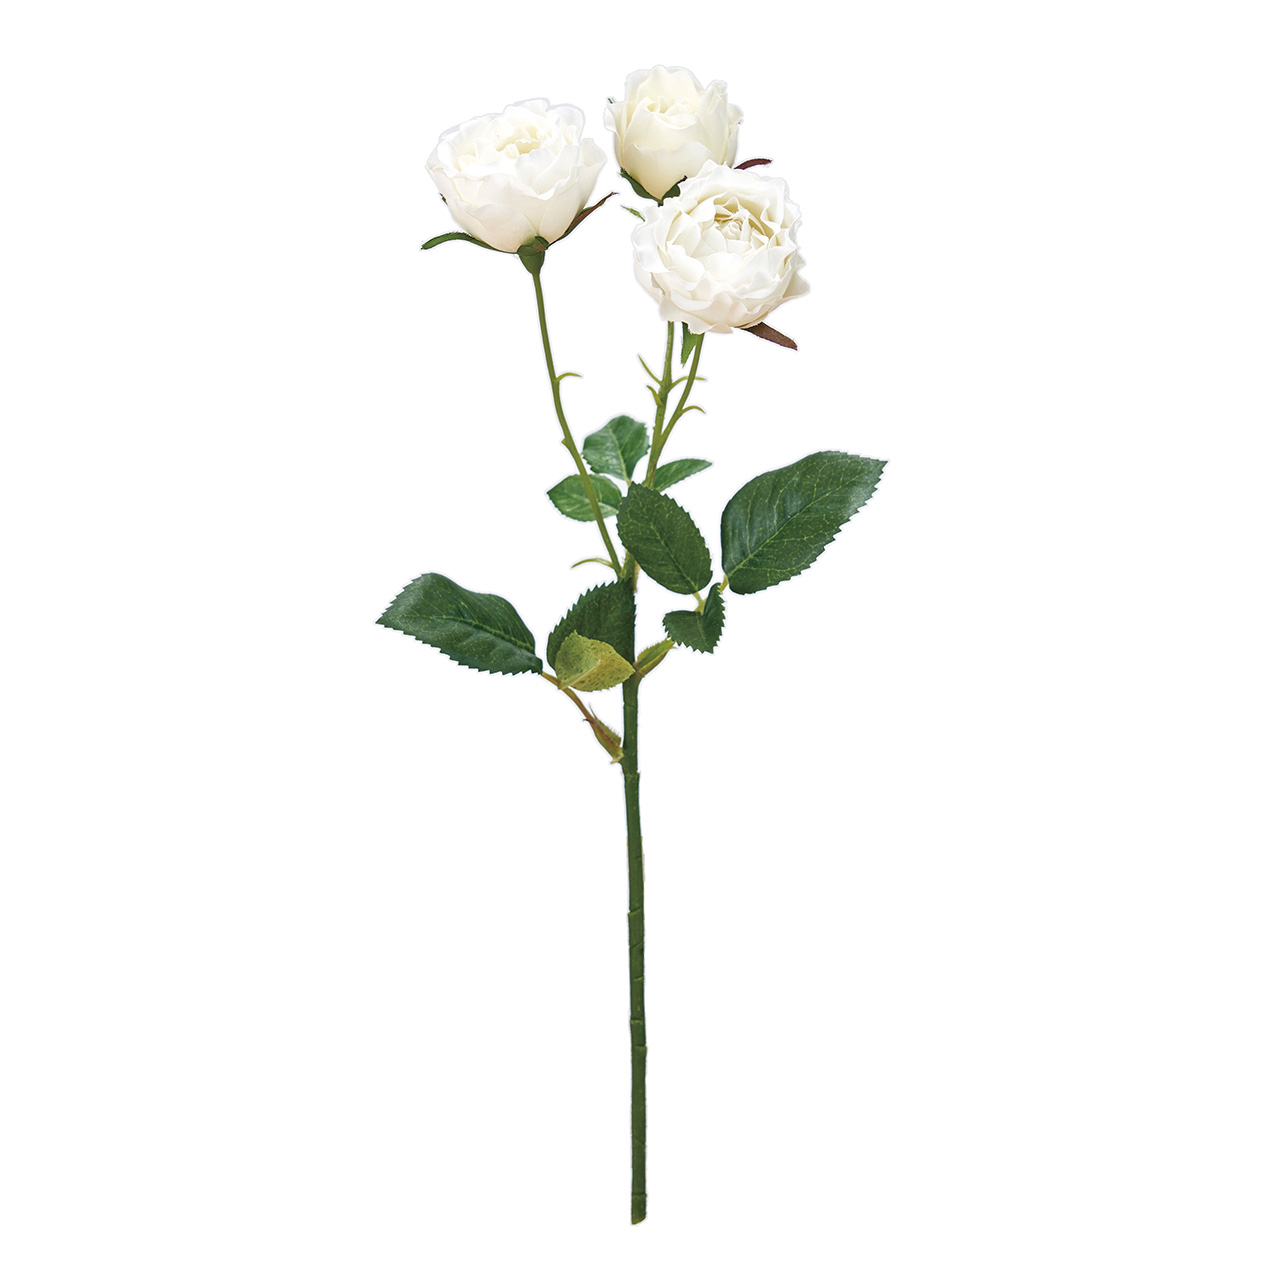 MAGIQ　プリマディローズ　ホワイト　アーティフィシャルフラワー　造花　ローズ　バラ　エシカル　サステナブル　FM300292-001